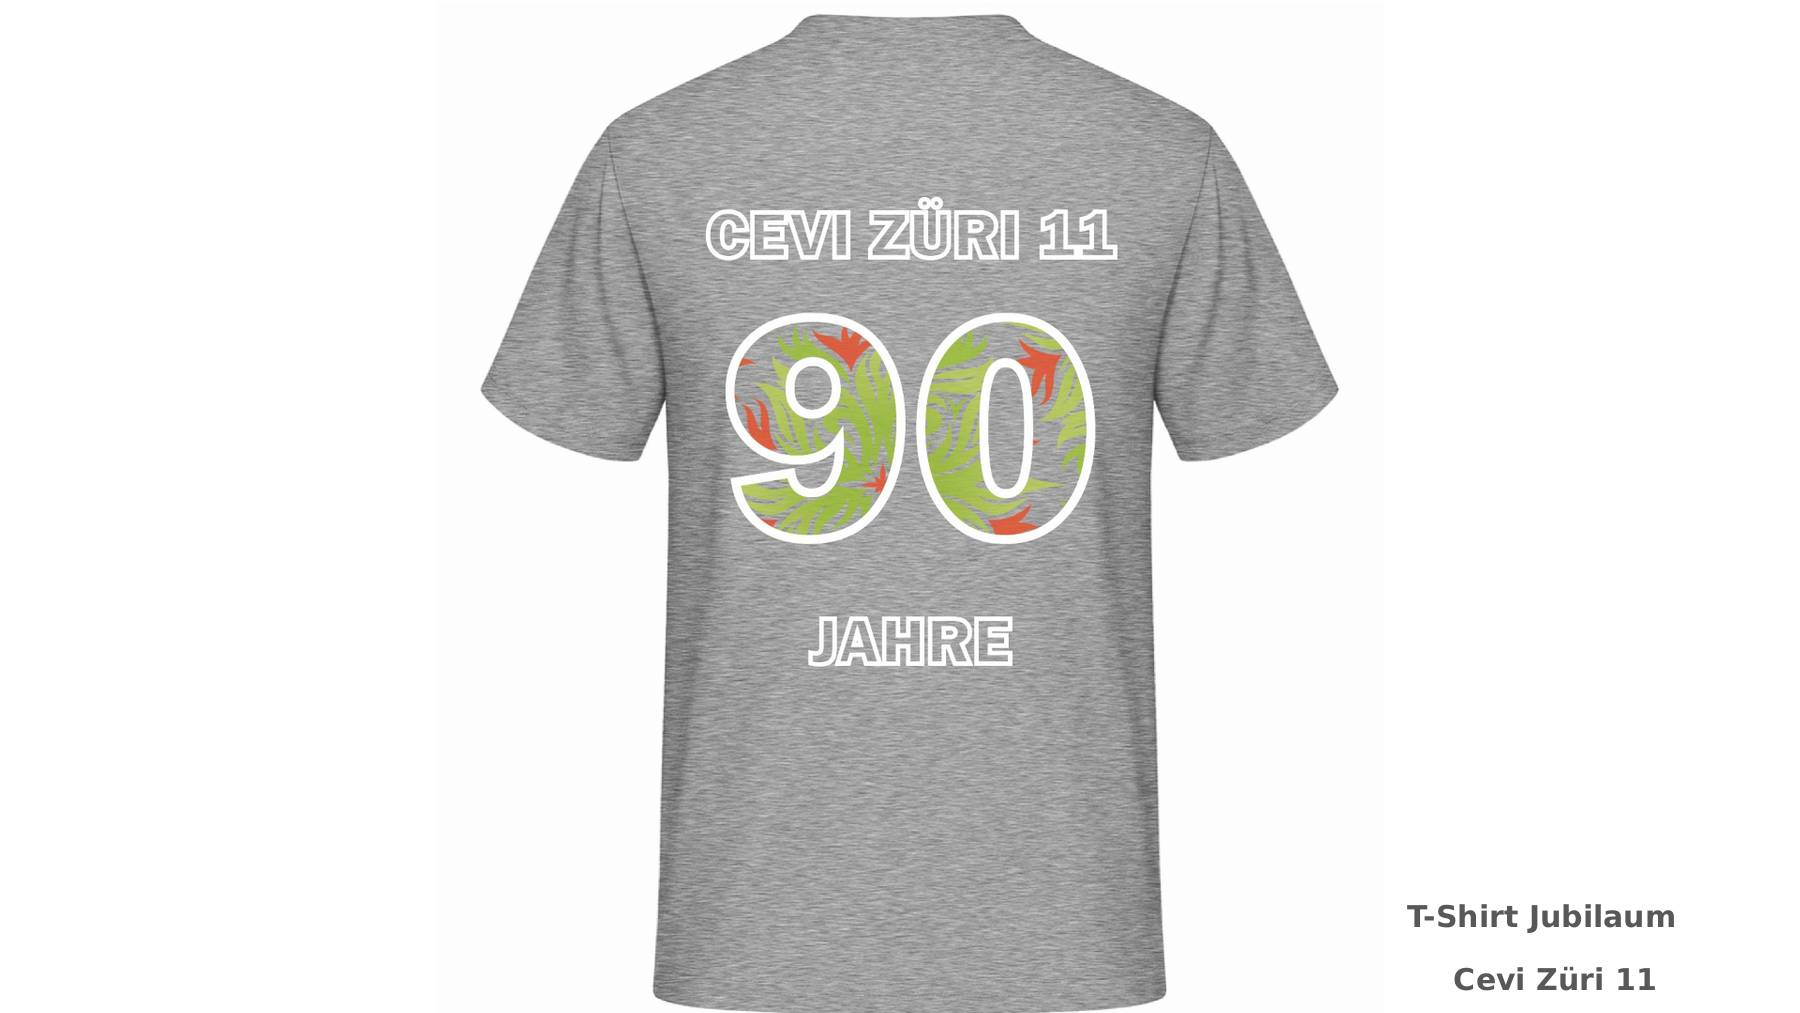 T-Shirt Jubilaum